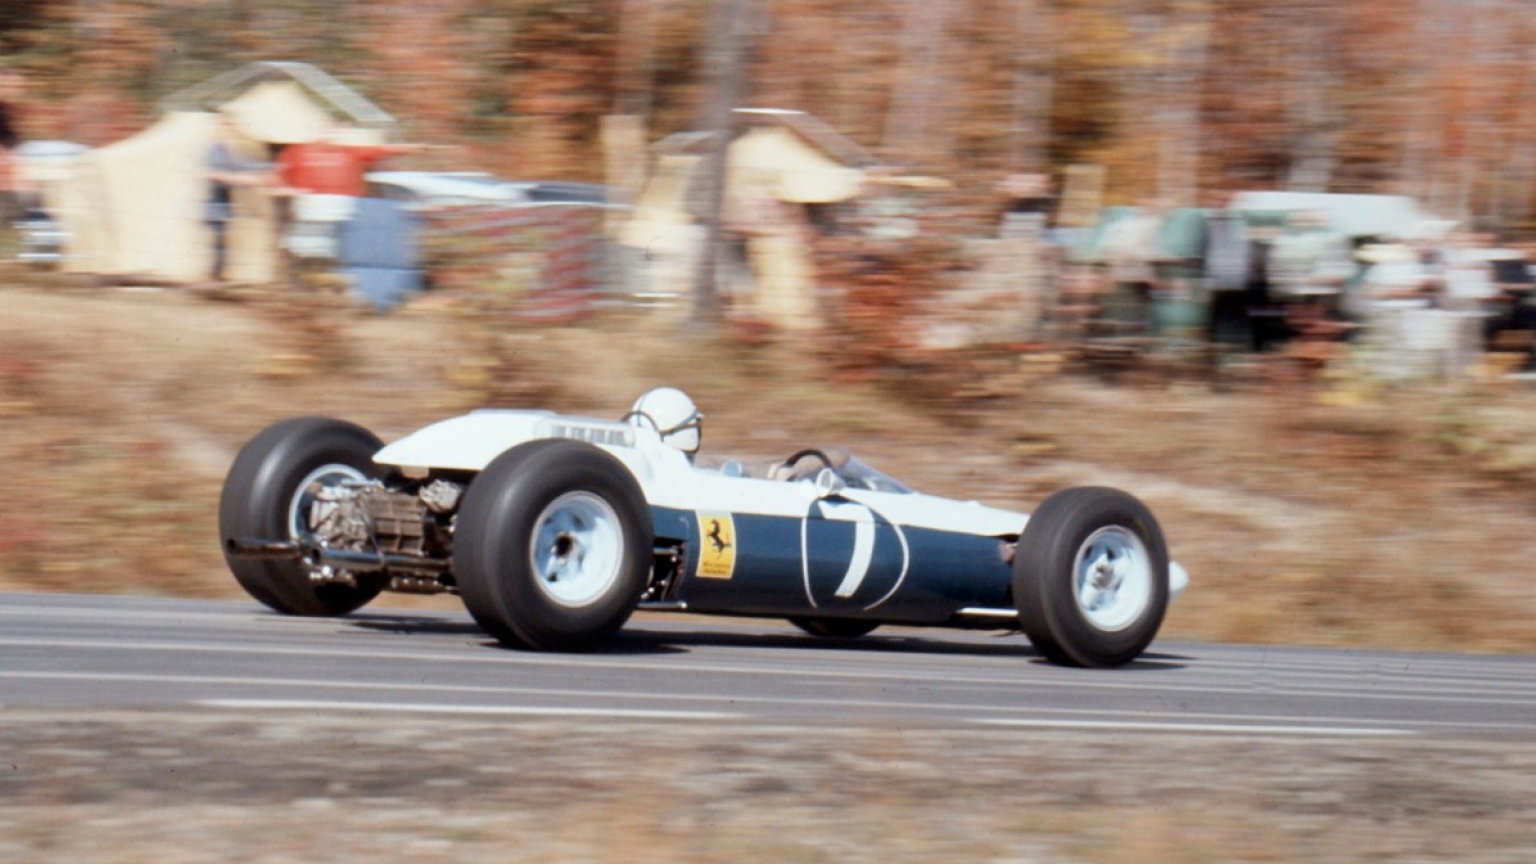 V roce 1964 získalo Ferrari titul s modrobílým vozem, tým odmítl startovat pod barvami Itálie